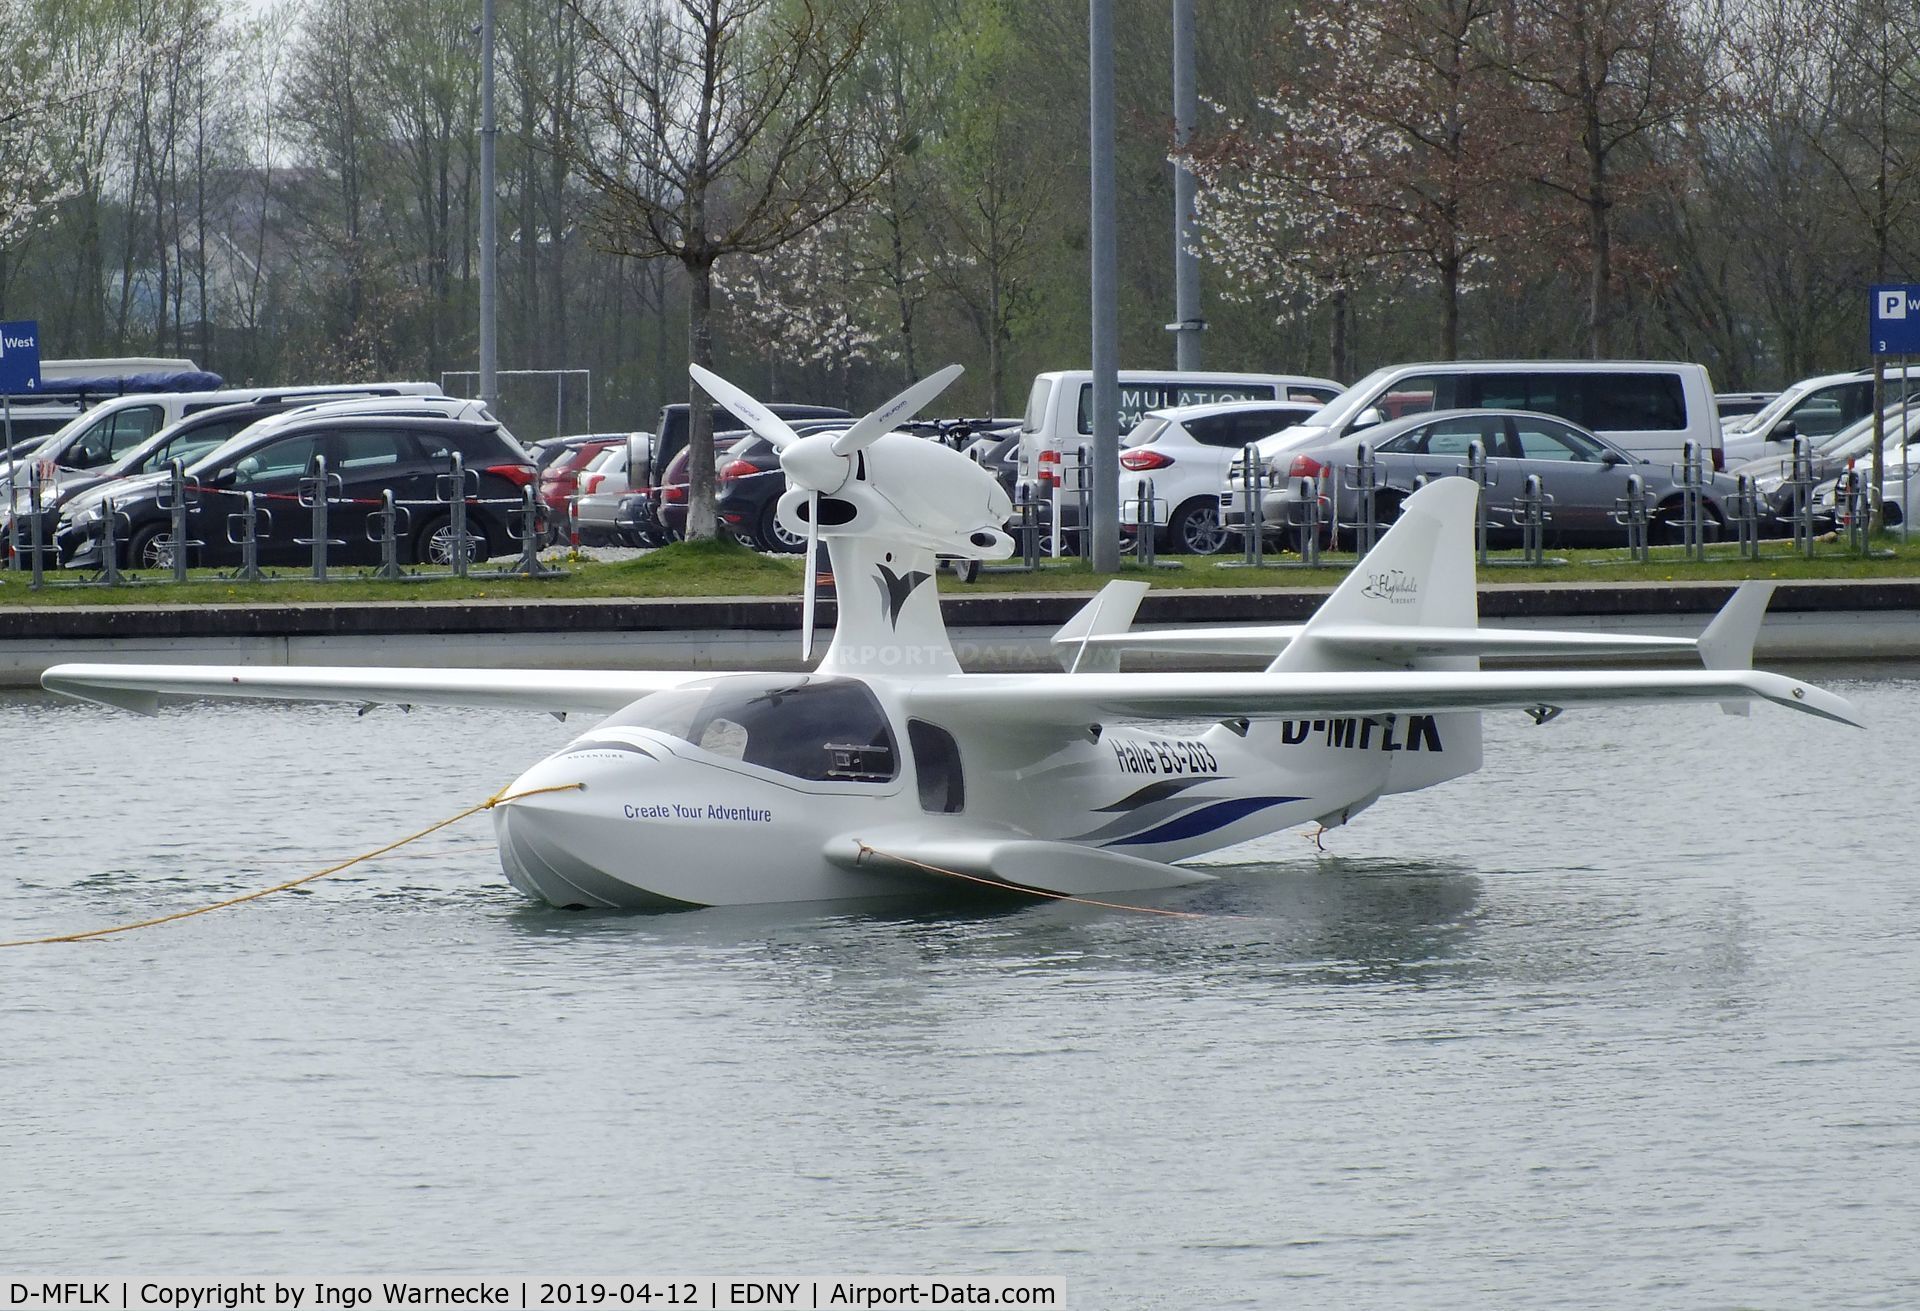 D-MFLK, Flywhale  Aircraft Adventure IS Sport C/N 6, Flywhale Aircraft Adventure iS Sport at the AERO 2019, Friedrichshafen